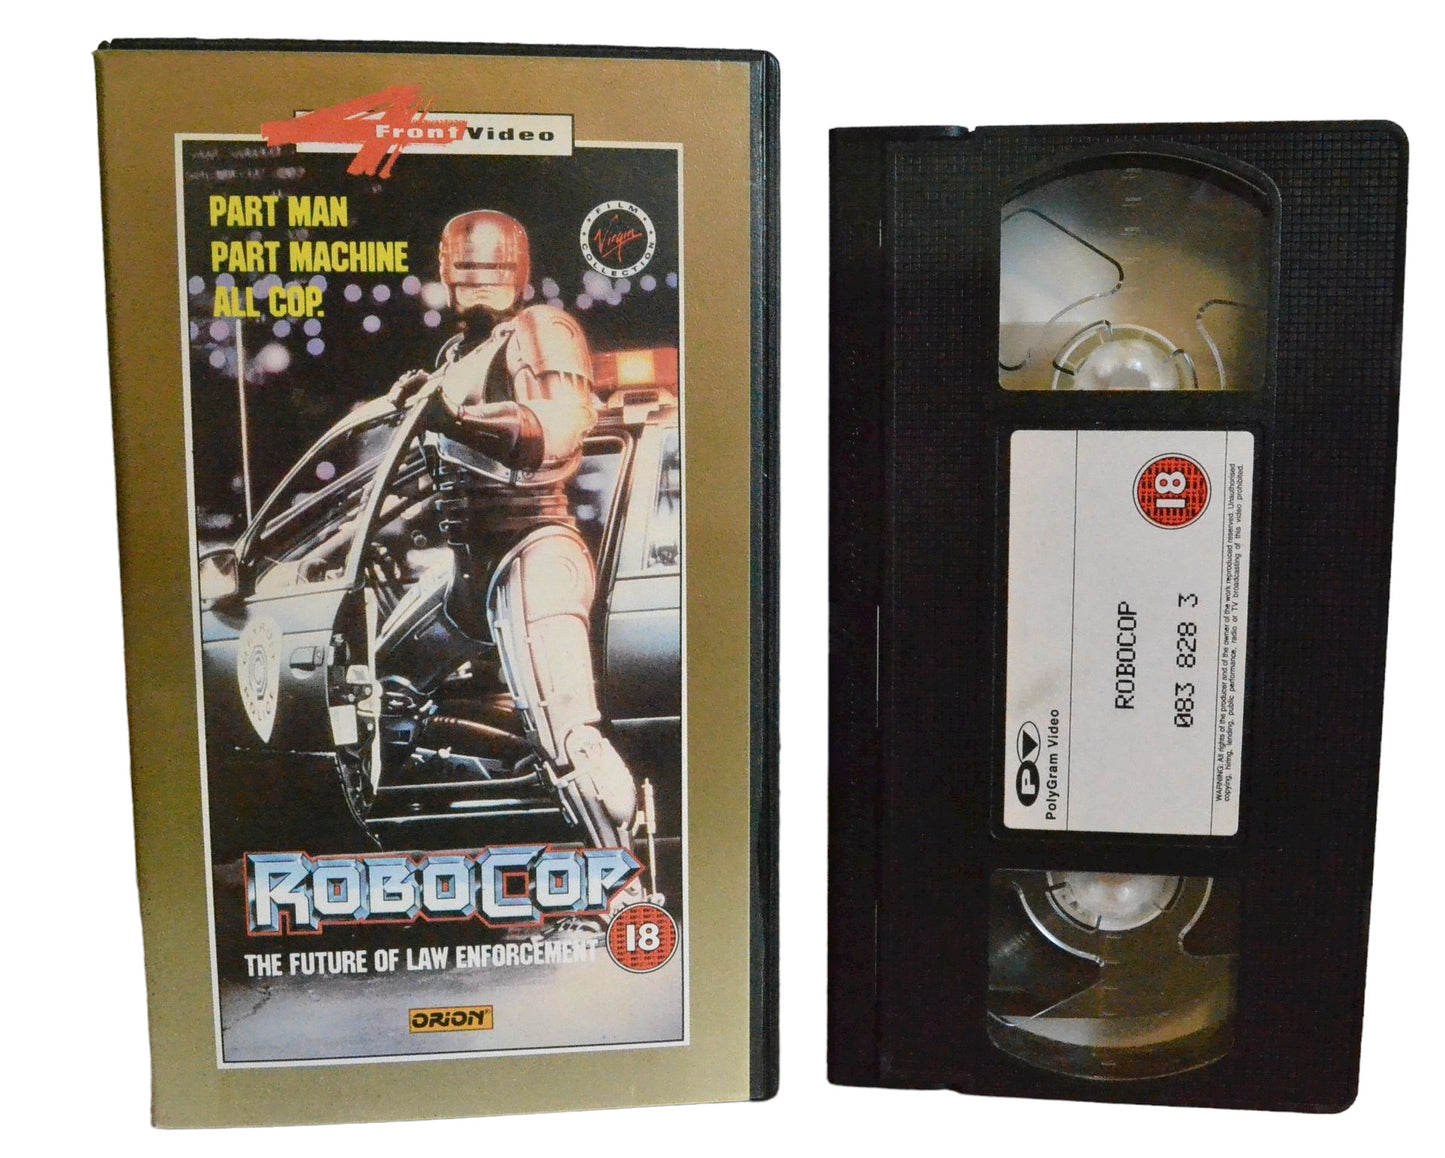 Robocop - Peter Weller - polyGram Video - Action - Pal - VHS-